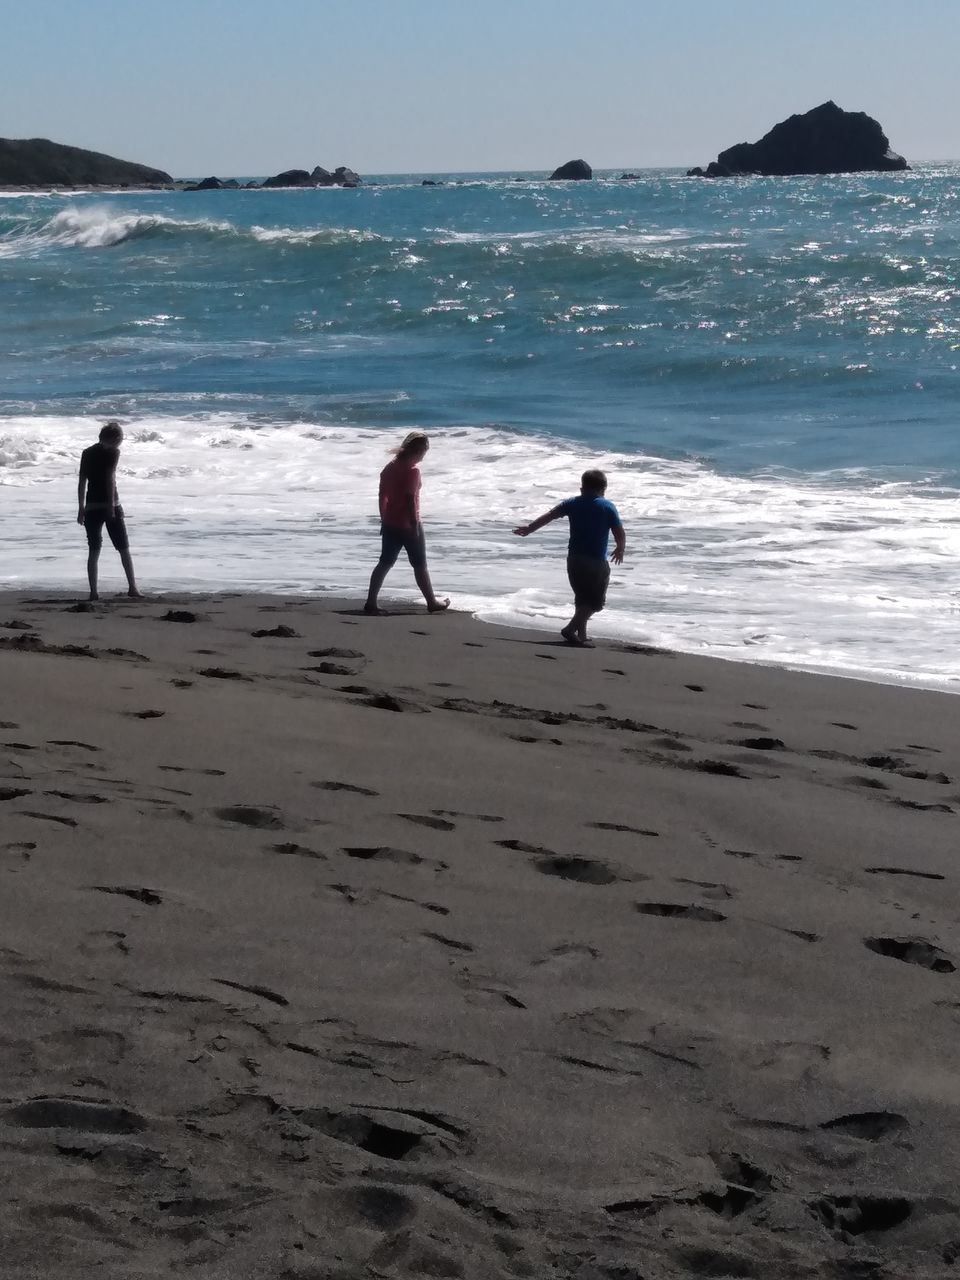 PEOPLE ON BEACH